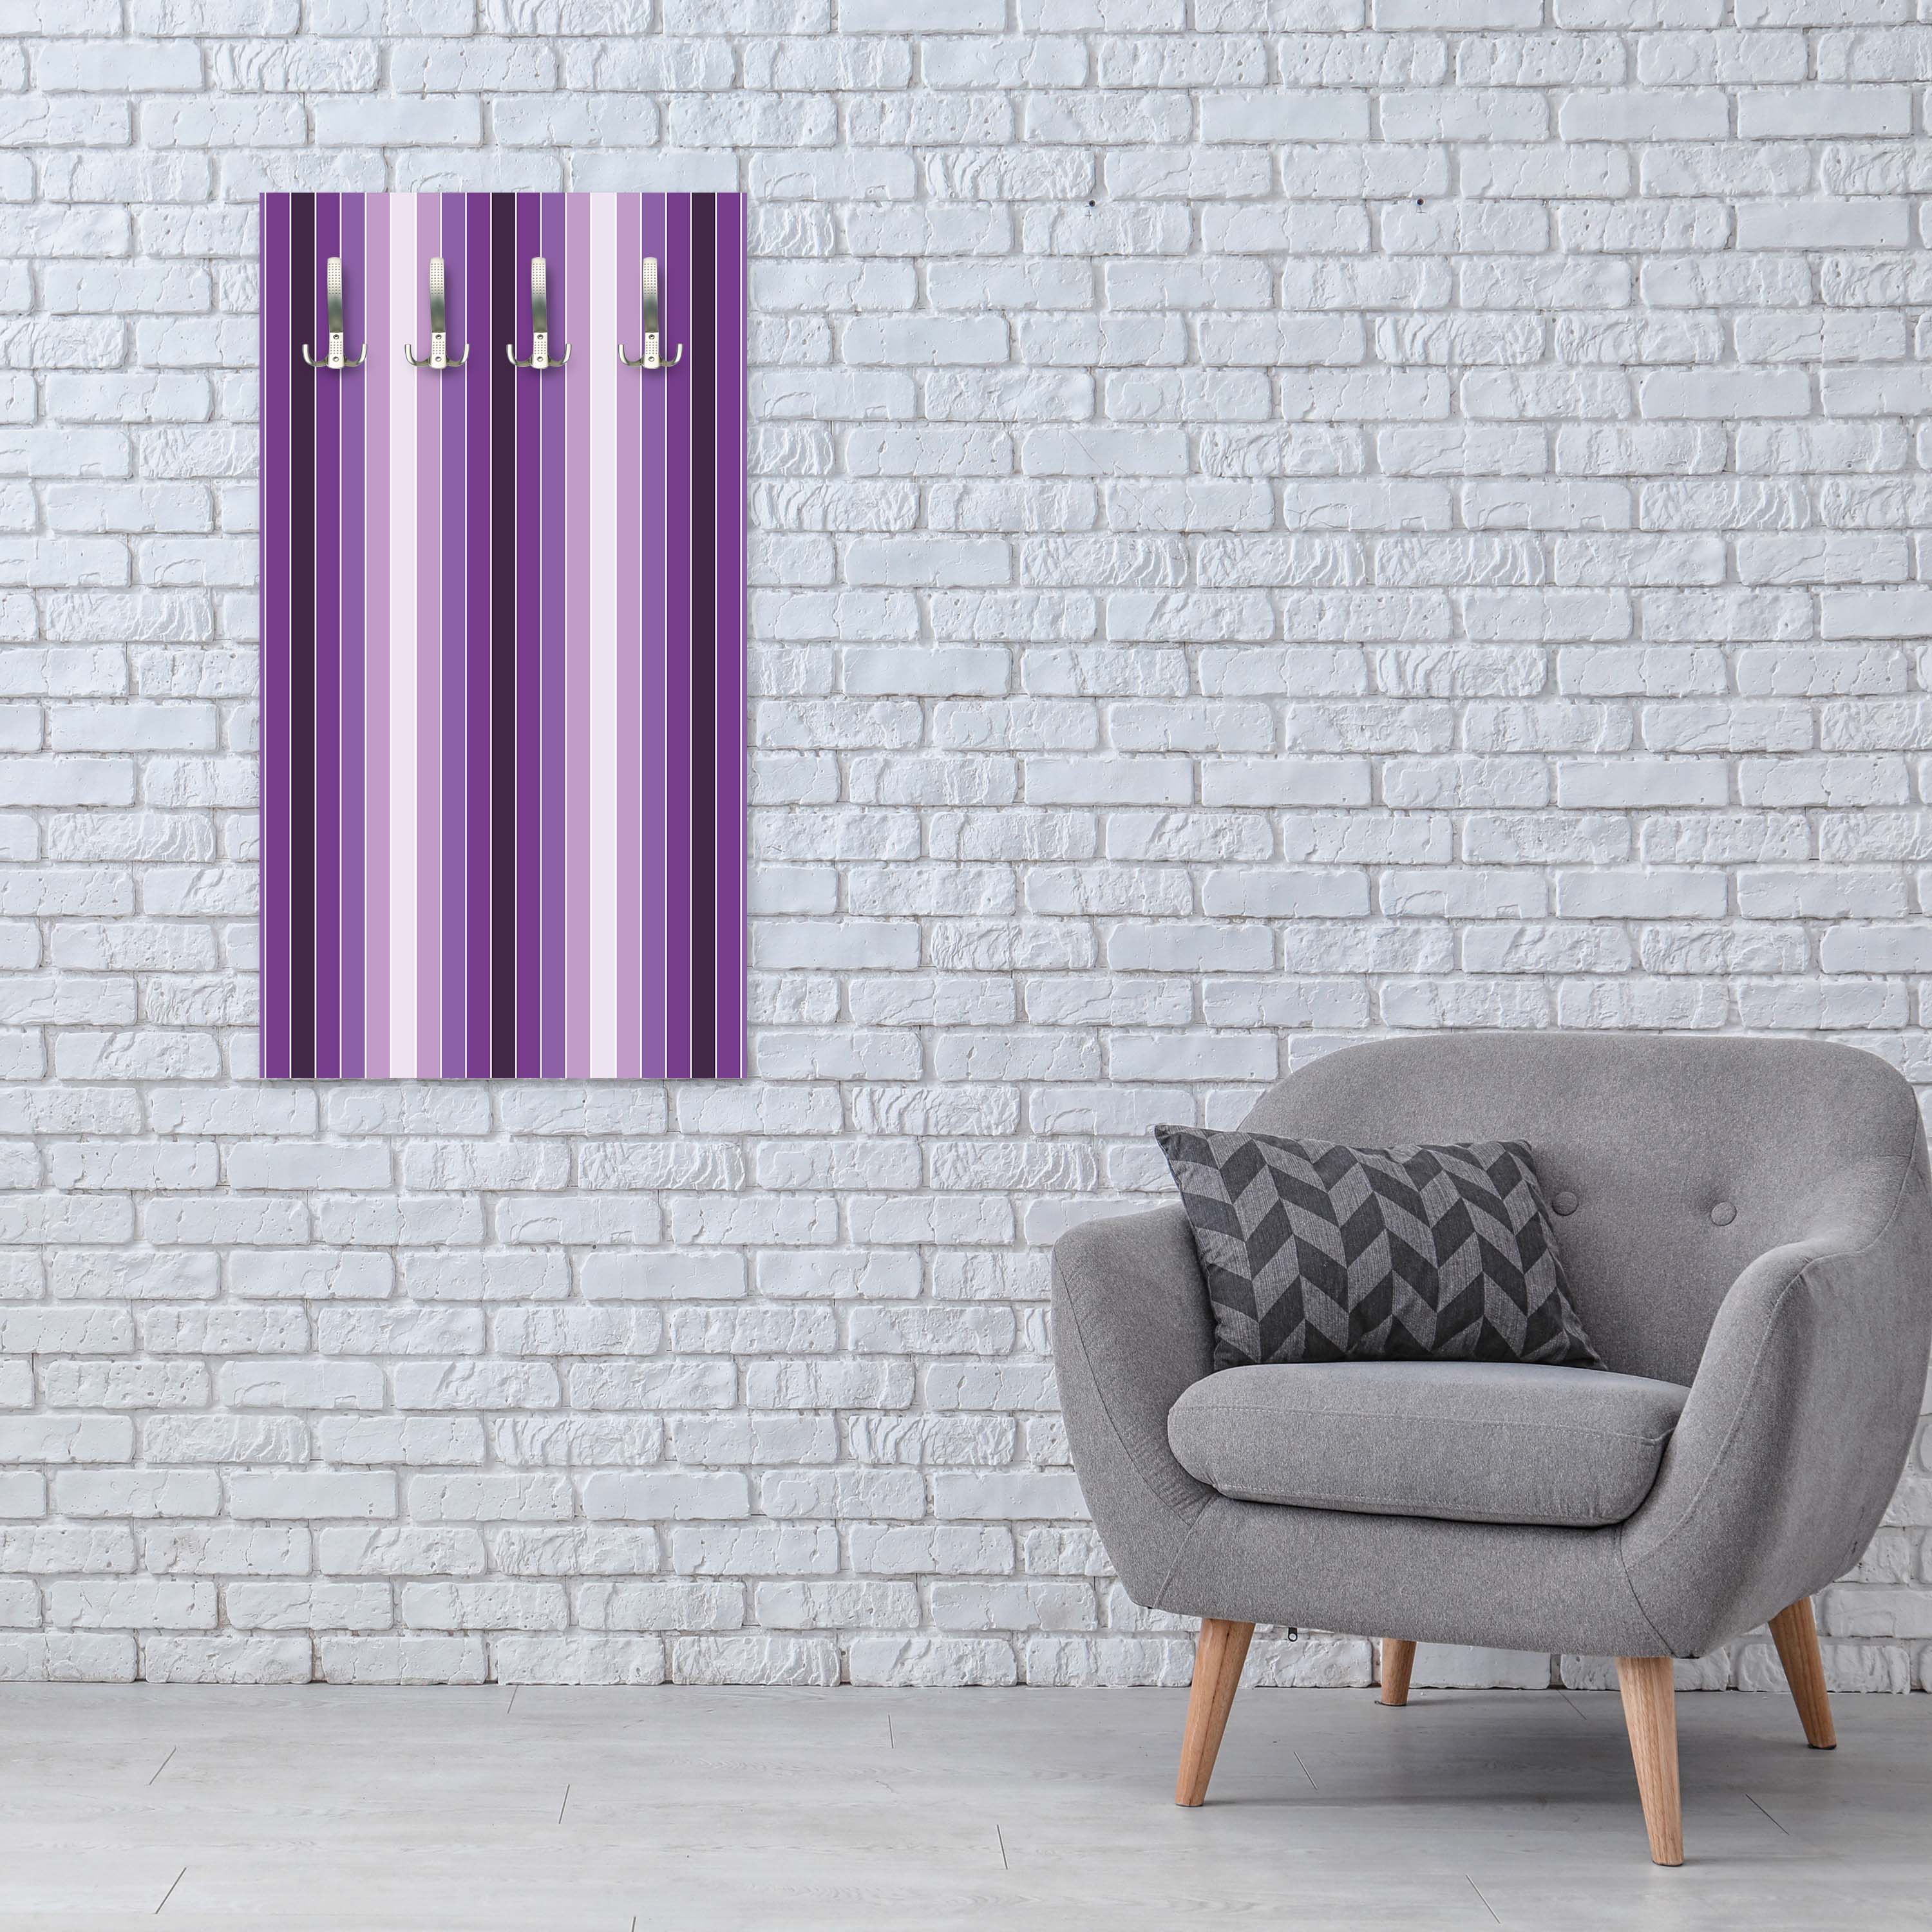 Garderobe Leuchtendes Violett Muster M0092 entdecken - Bild 3